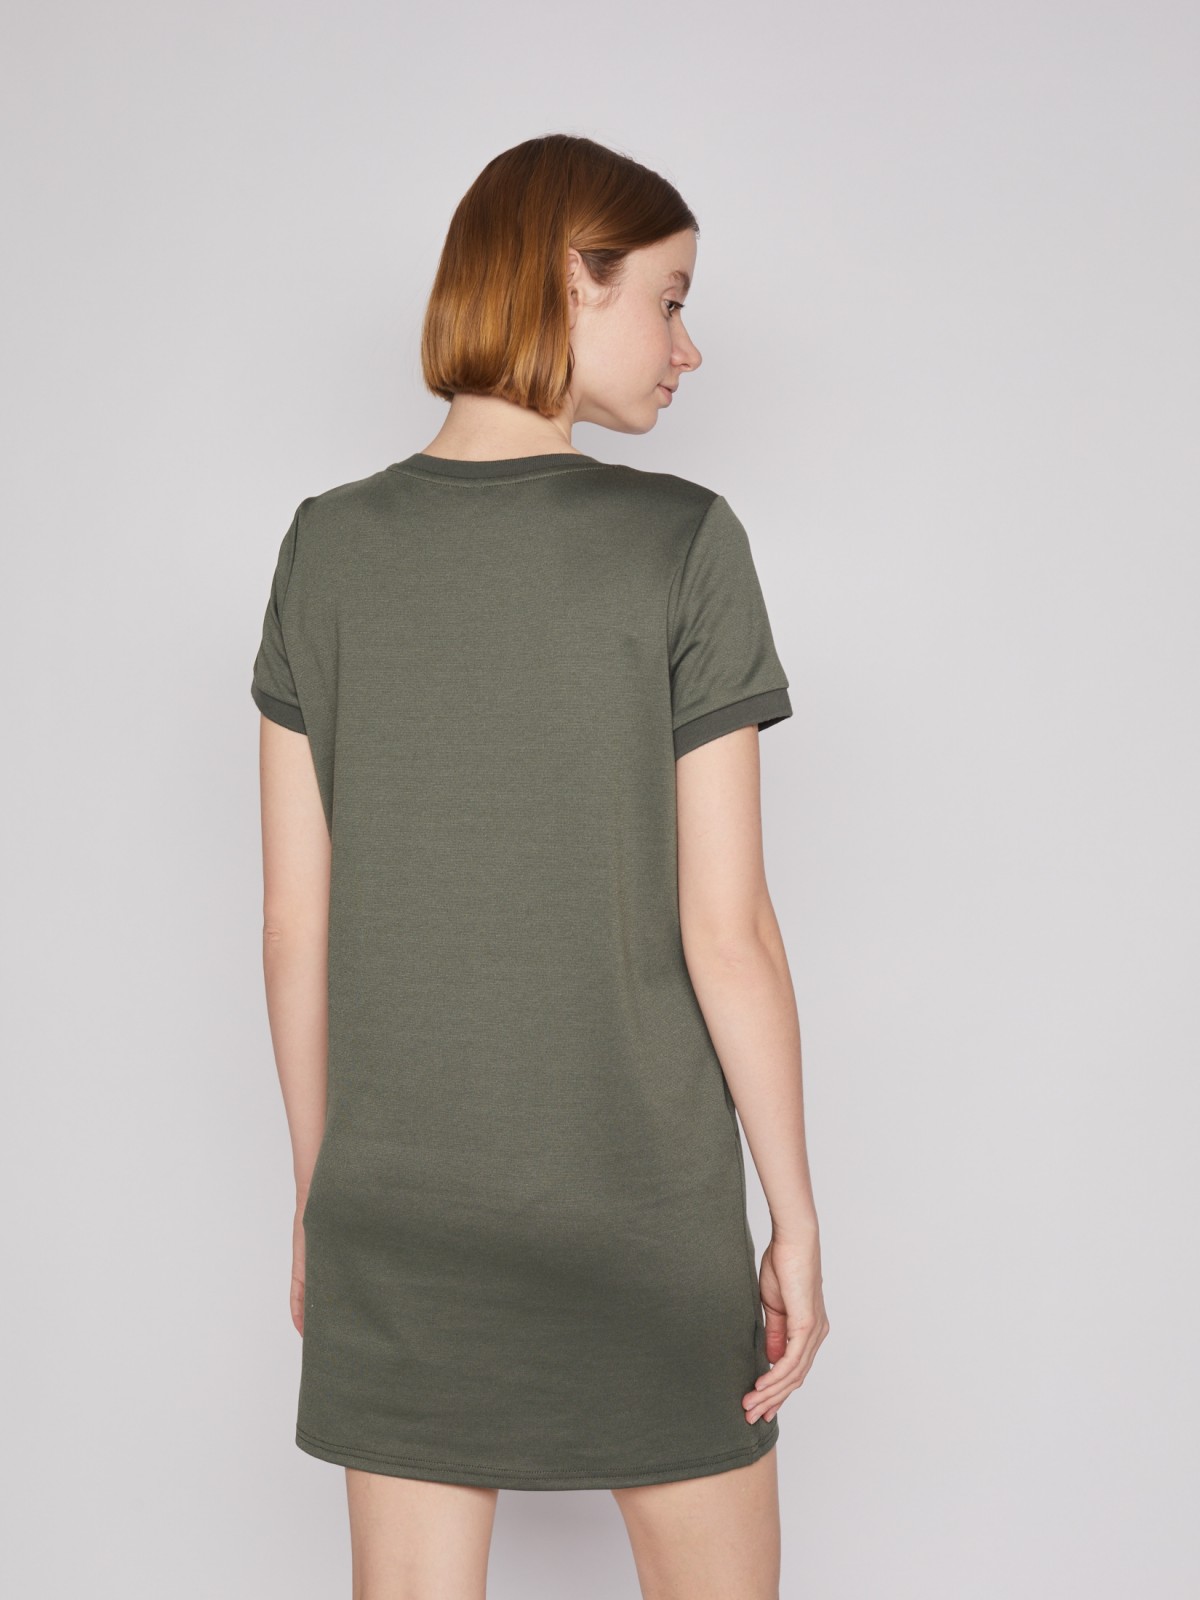 Платье-футболка с коротким рукавом zolla 02213819F132, цвет хаки, размер S - фото 4